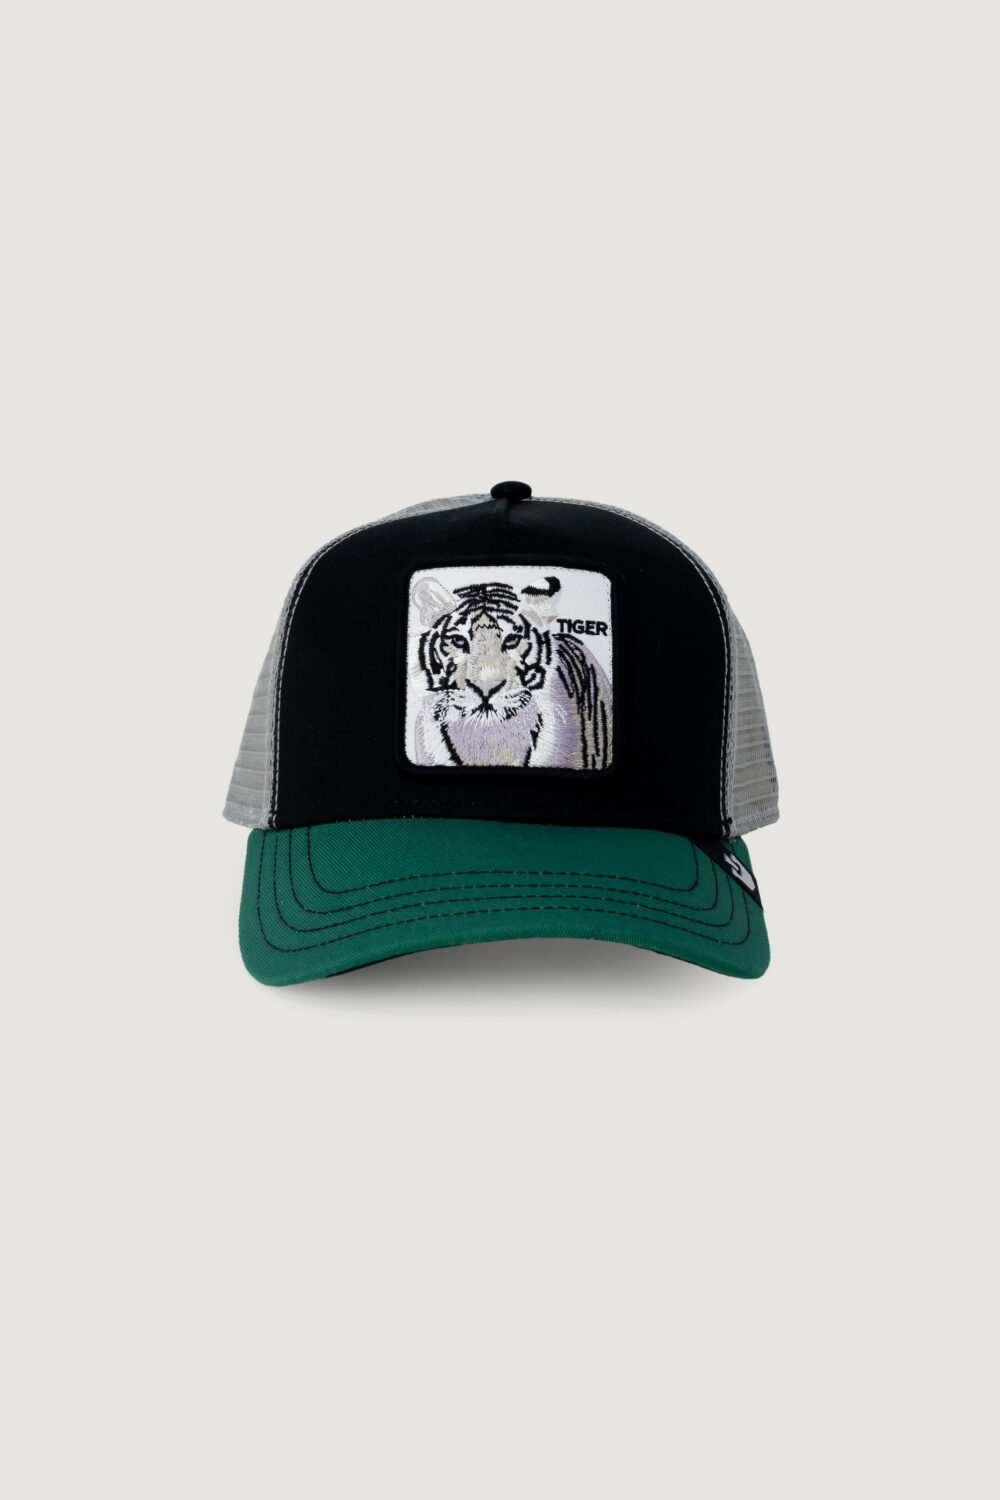 Cappello con visiera GOORIN BROS TIGER Verde - Foto 1